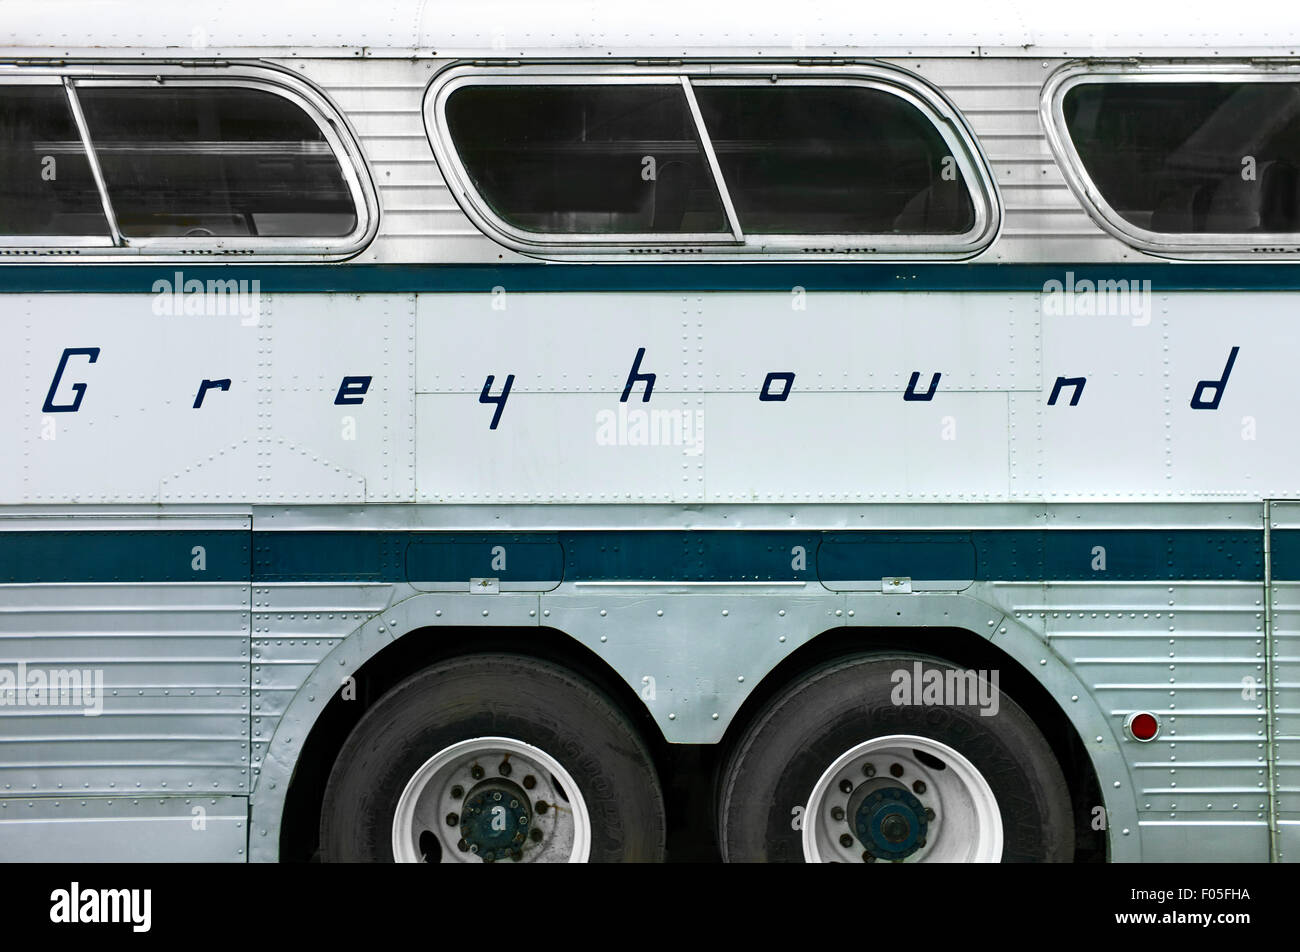 Bus Greyhound historique avec logo sur le côté Banque D'Images